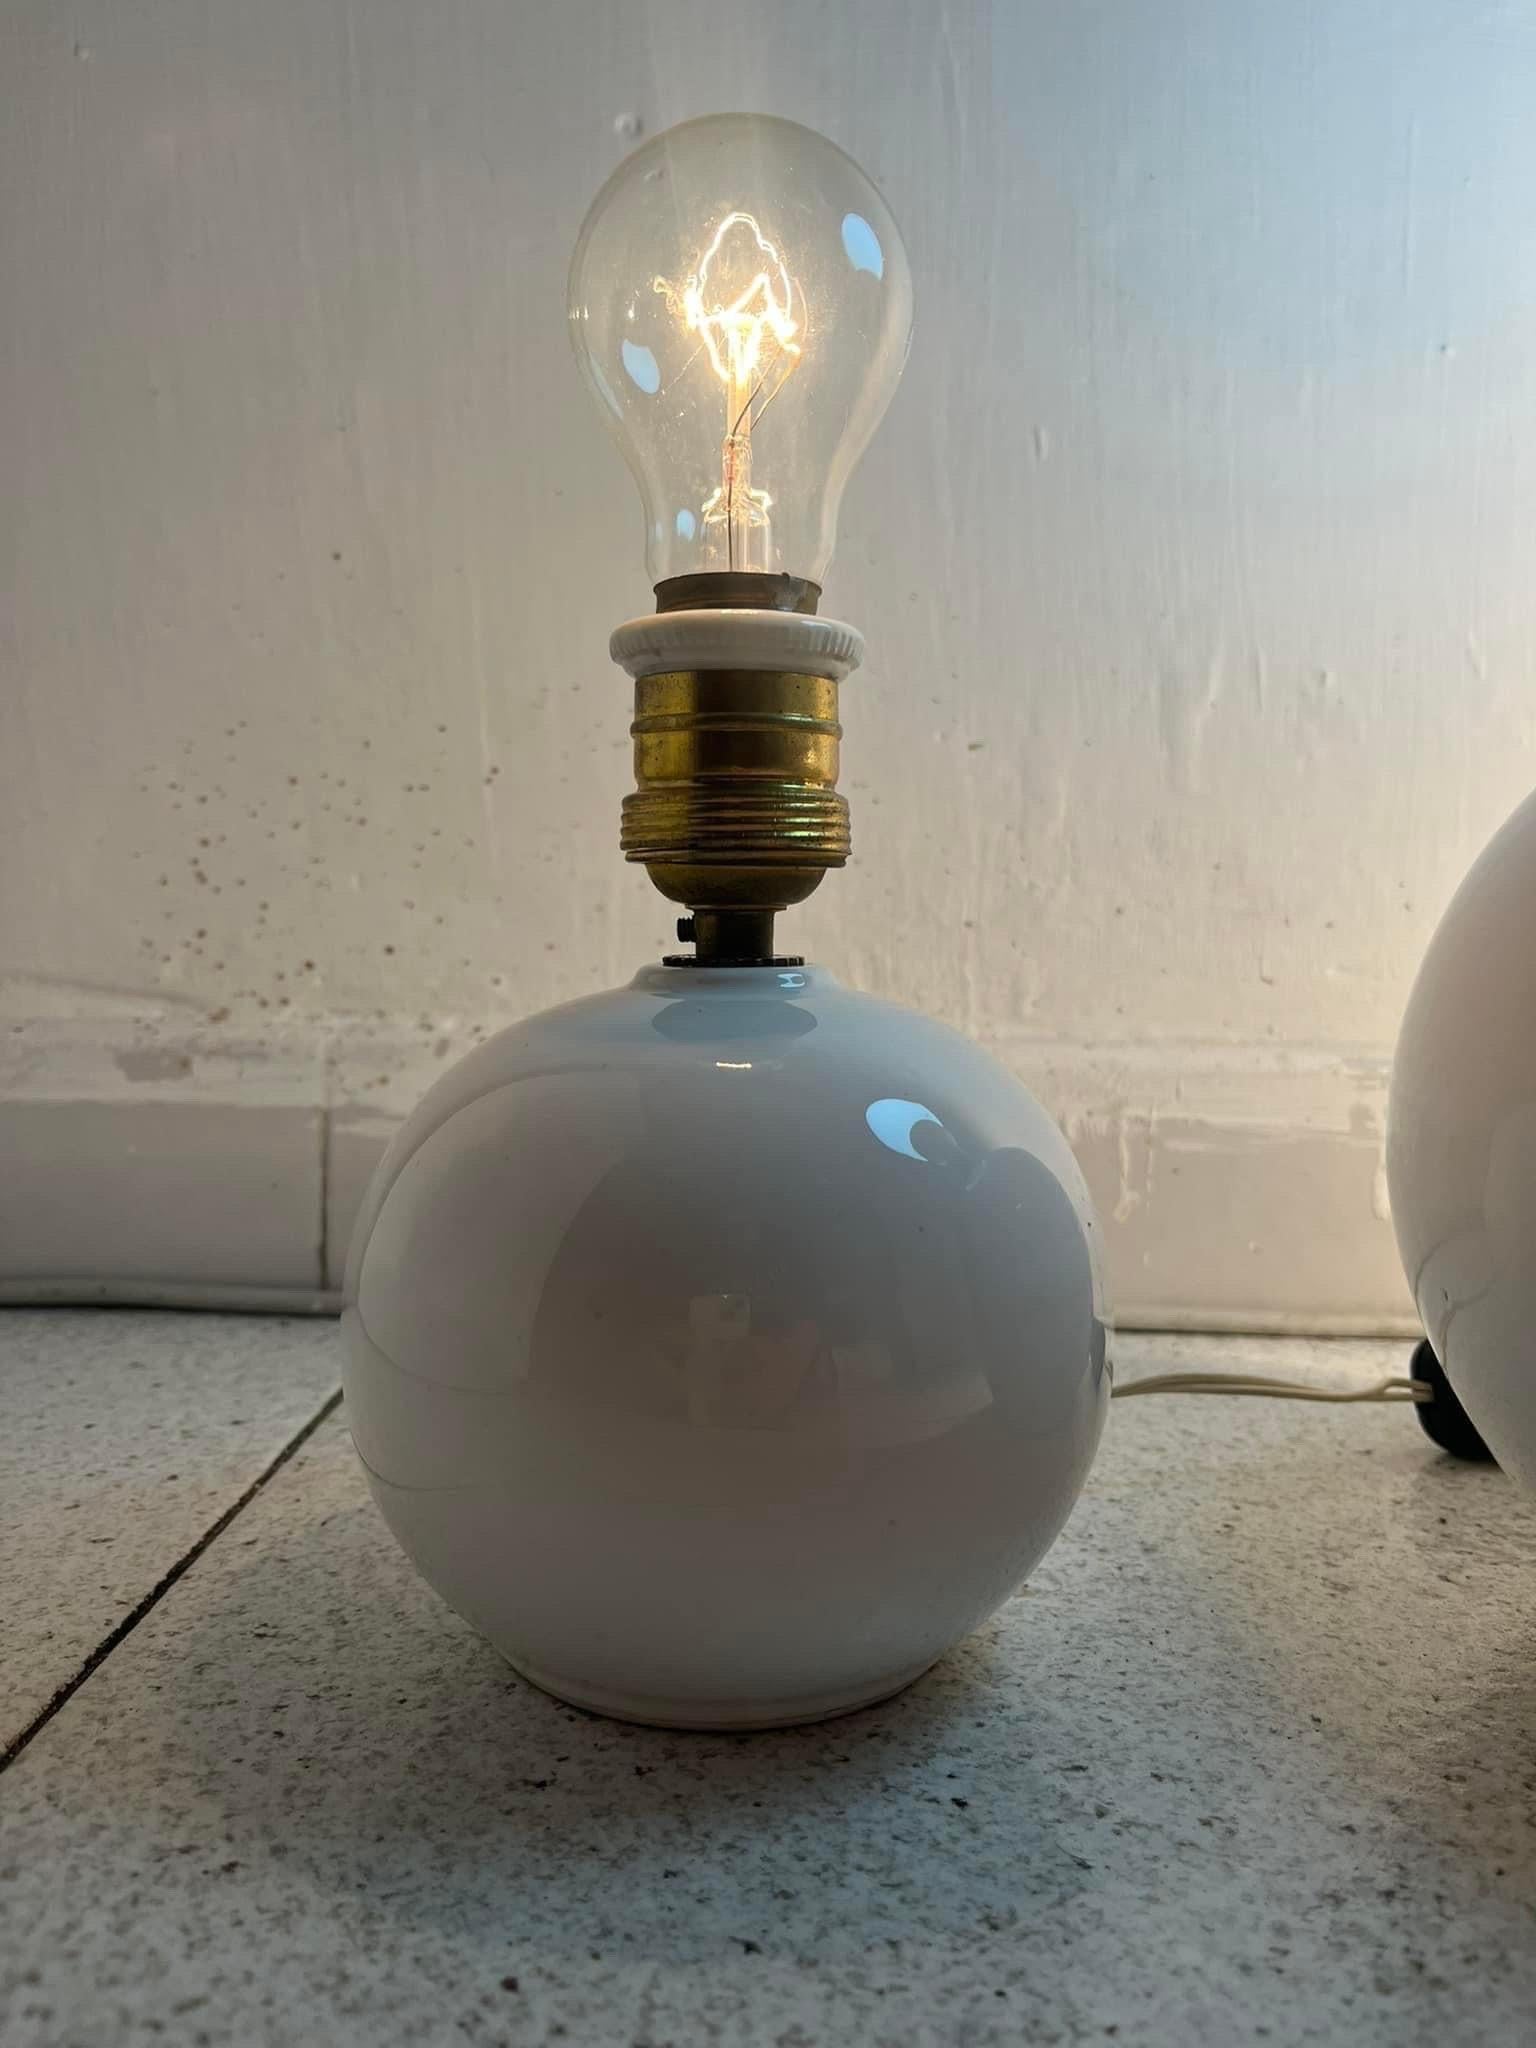 Tris di lampade in ceramica opaline  pour toutes les possibilités de livraison le grand et l'alto 23 cm circonférence 20 cm i piccoli sono alti 16 cm circonférence 13 cM